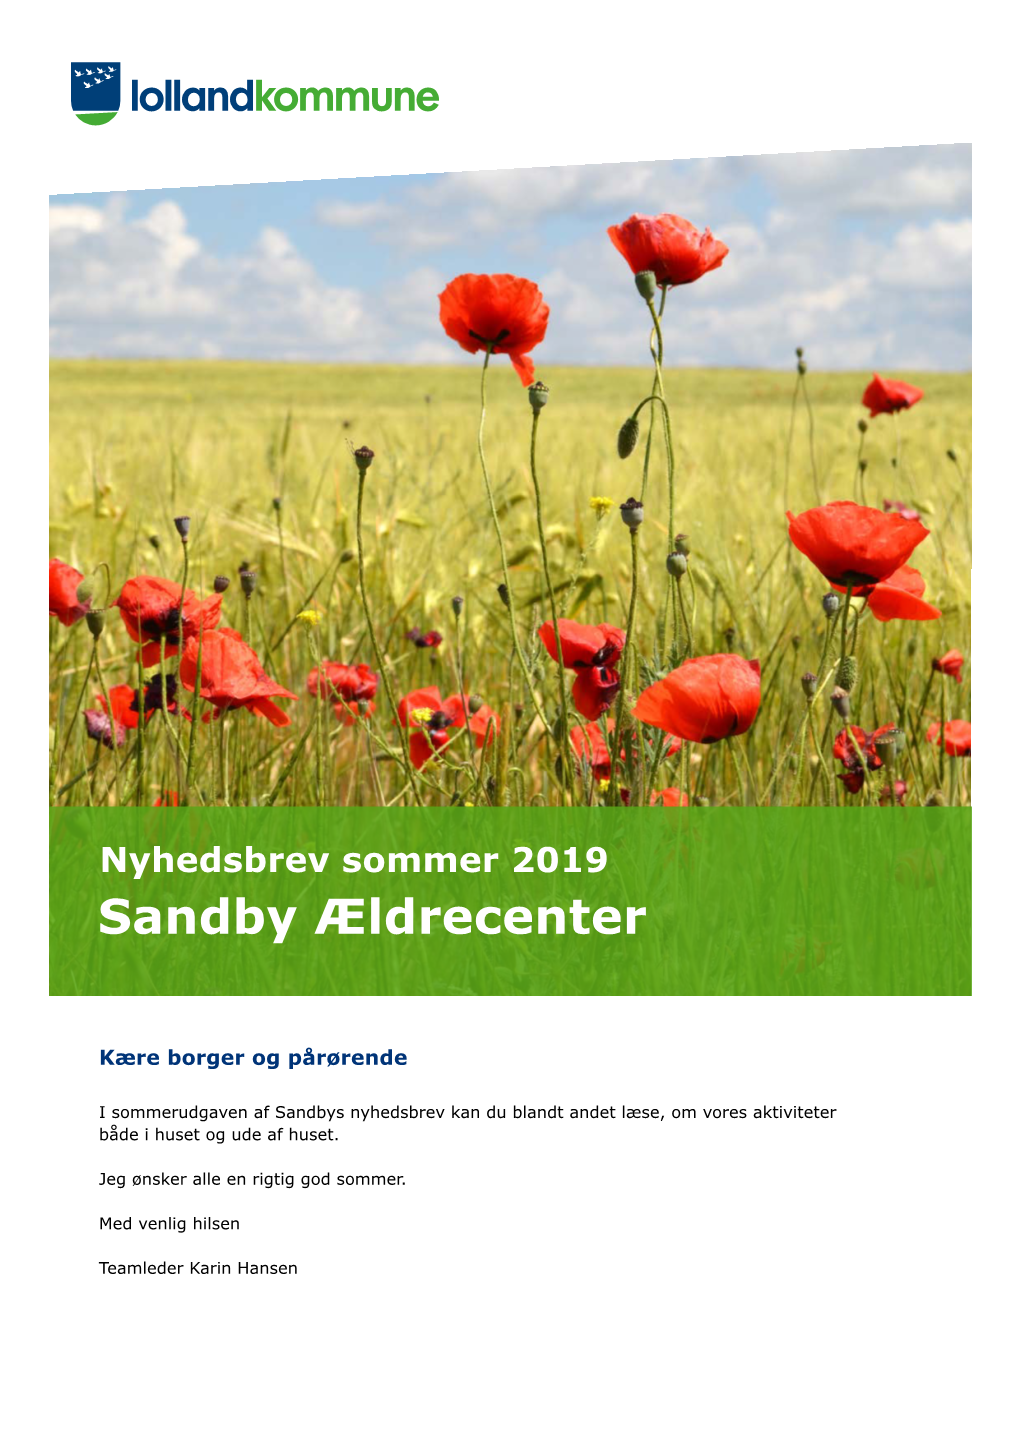 Nyhedsbrev for Sandby Ældrecenter Sommer 2019